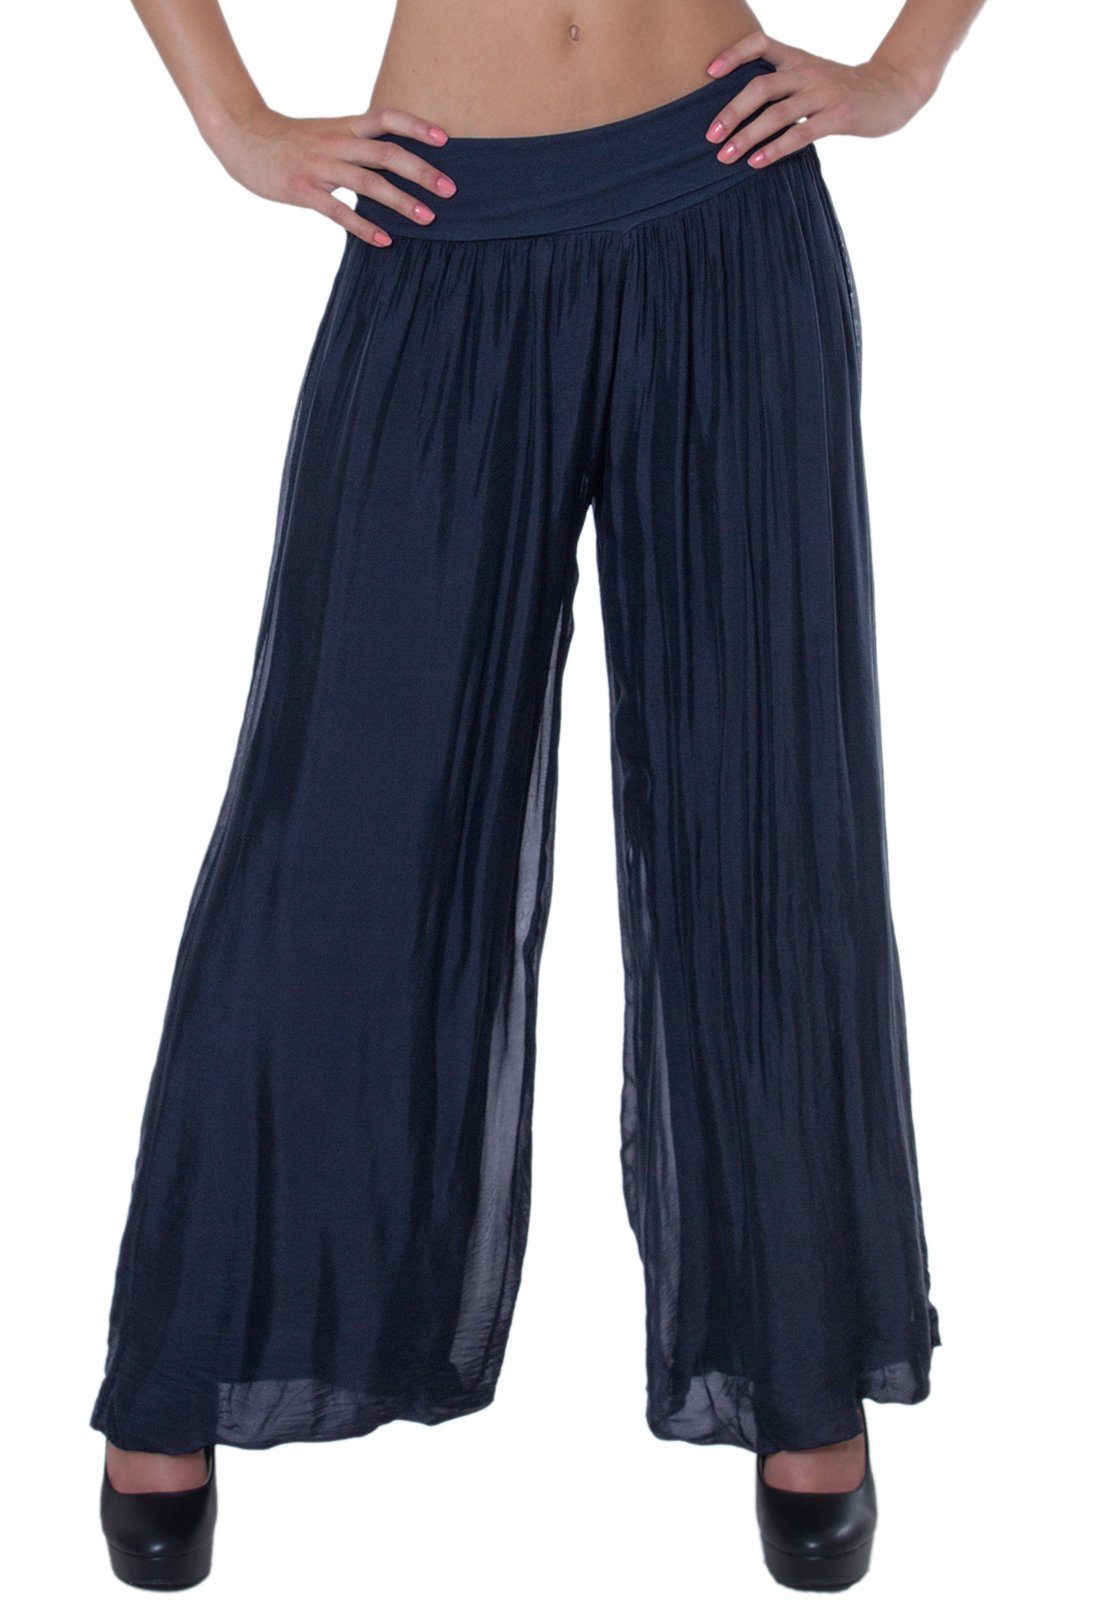 Caspar Palazzohose KHS010 elegante Damen Hose mit Seidenanteil und hohem Stretch Bund dunkelblau